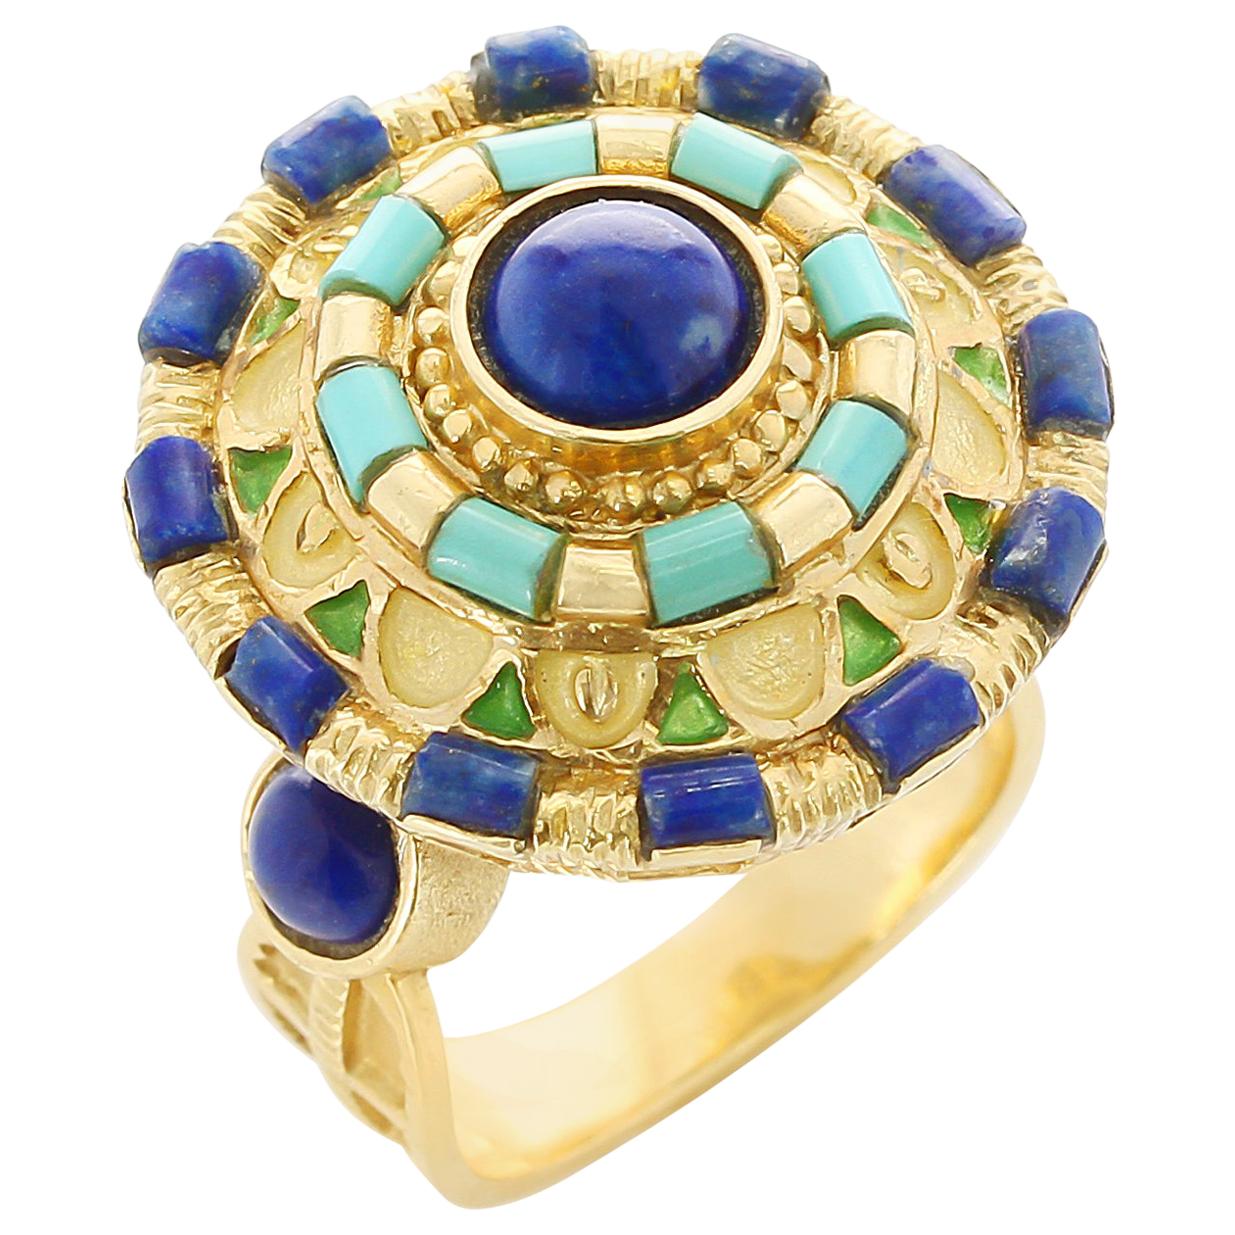 Circular Lapis and Turquoise Statement Ring, Enamel and 18 Karat Yellow Gold